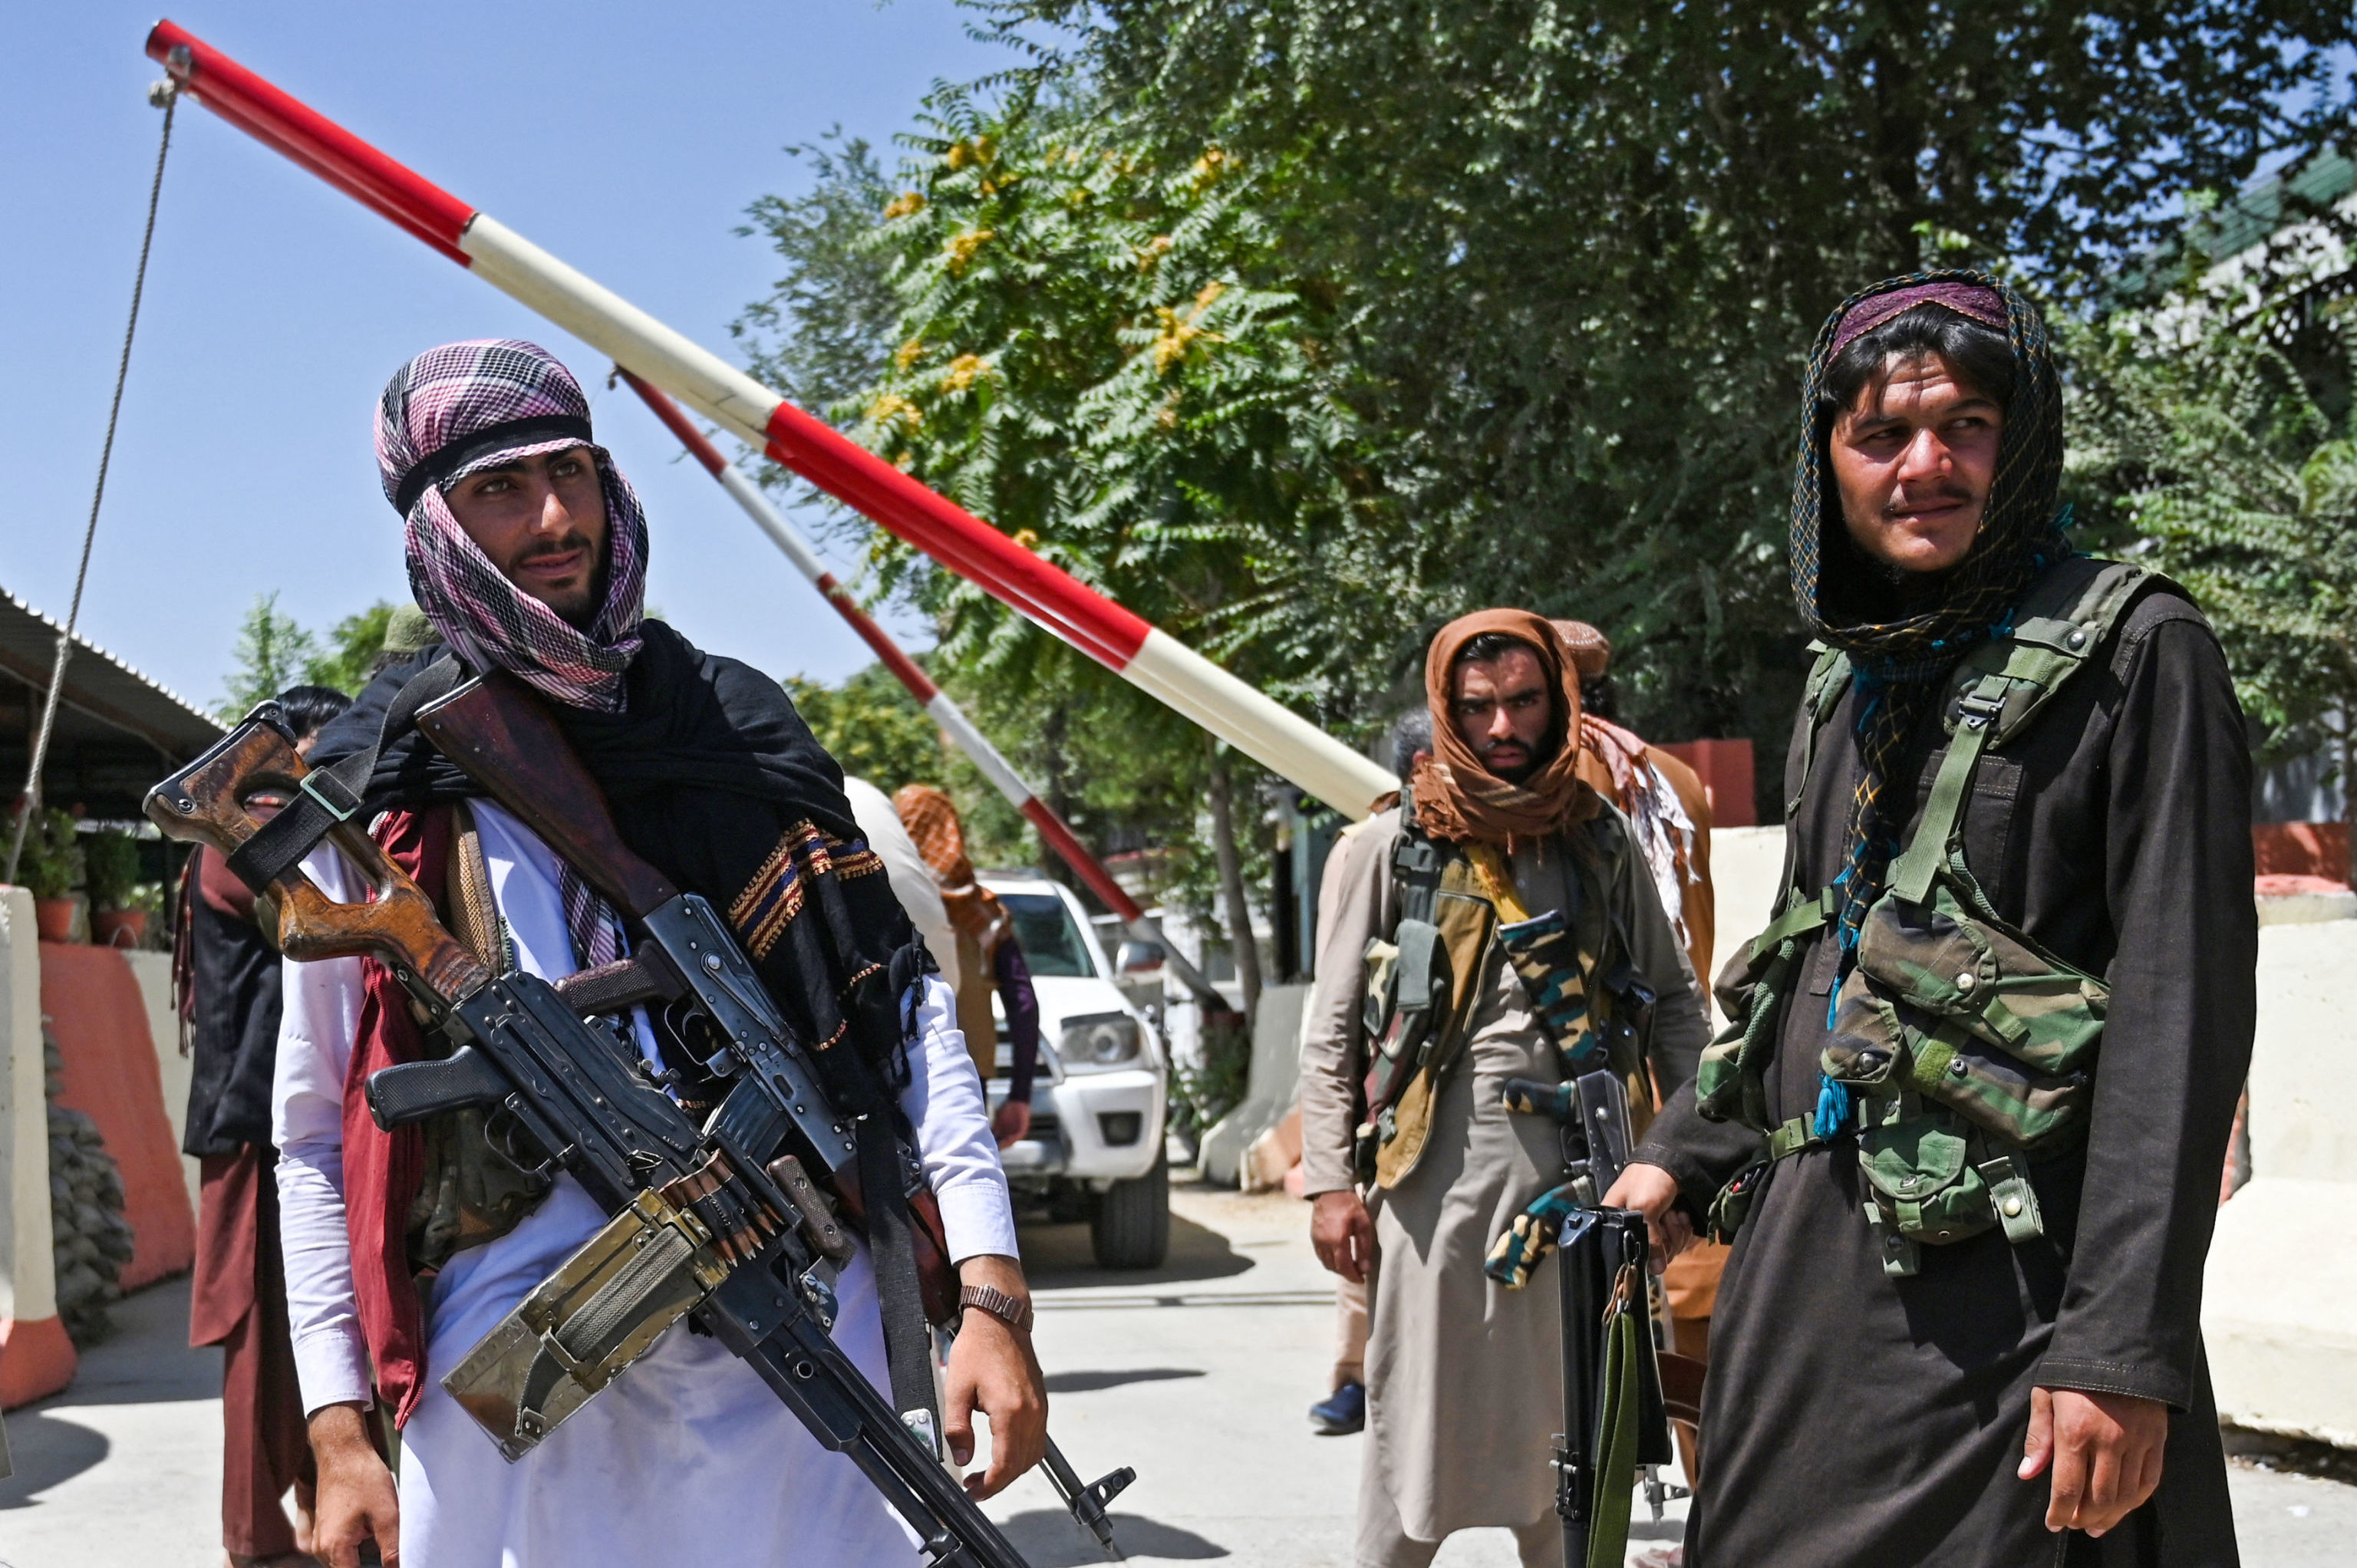 Боевики запрещенного в РФ террористического движения "Талибан"* охраняют дорогу в Кабуле, 16 августа 2021